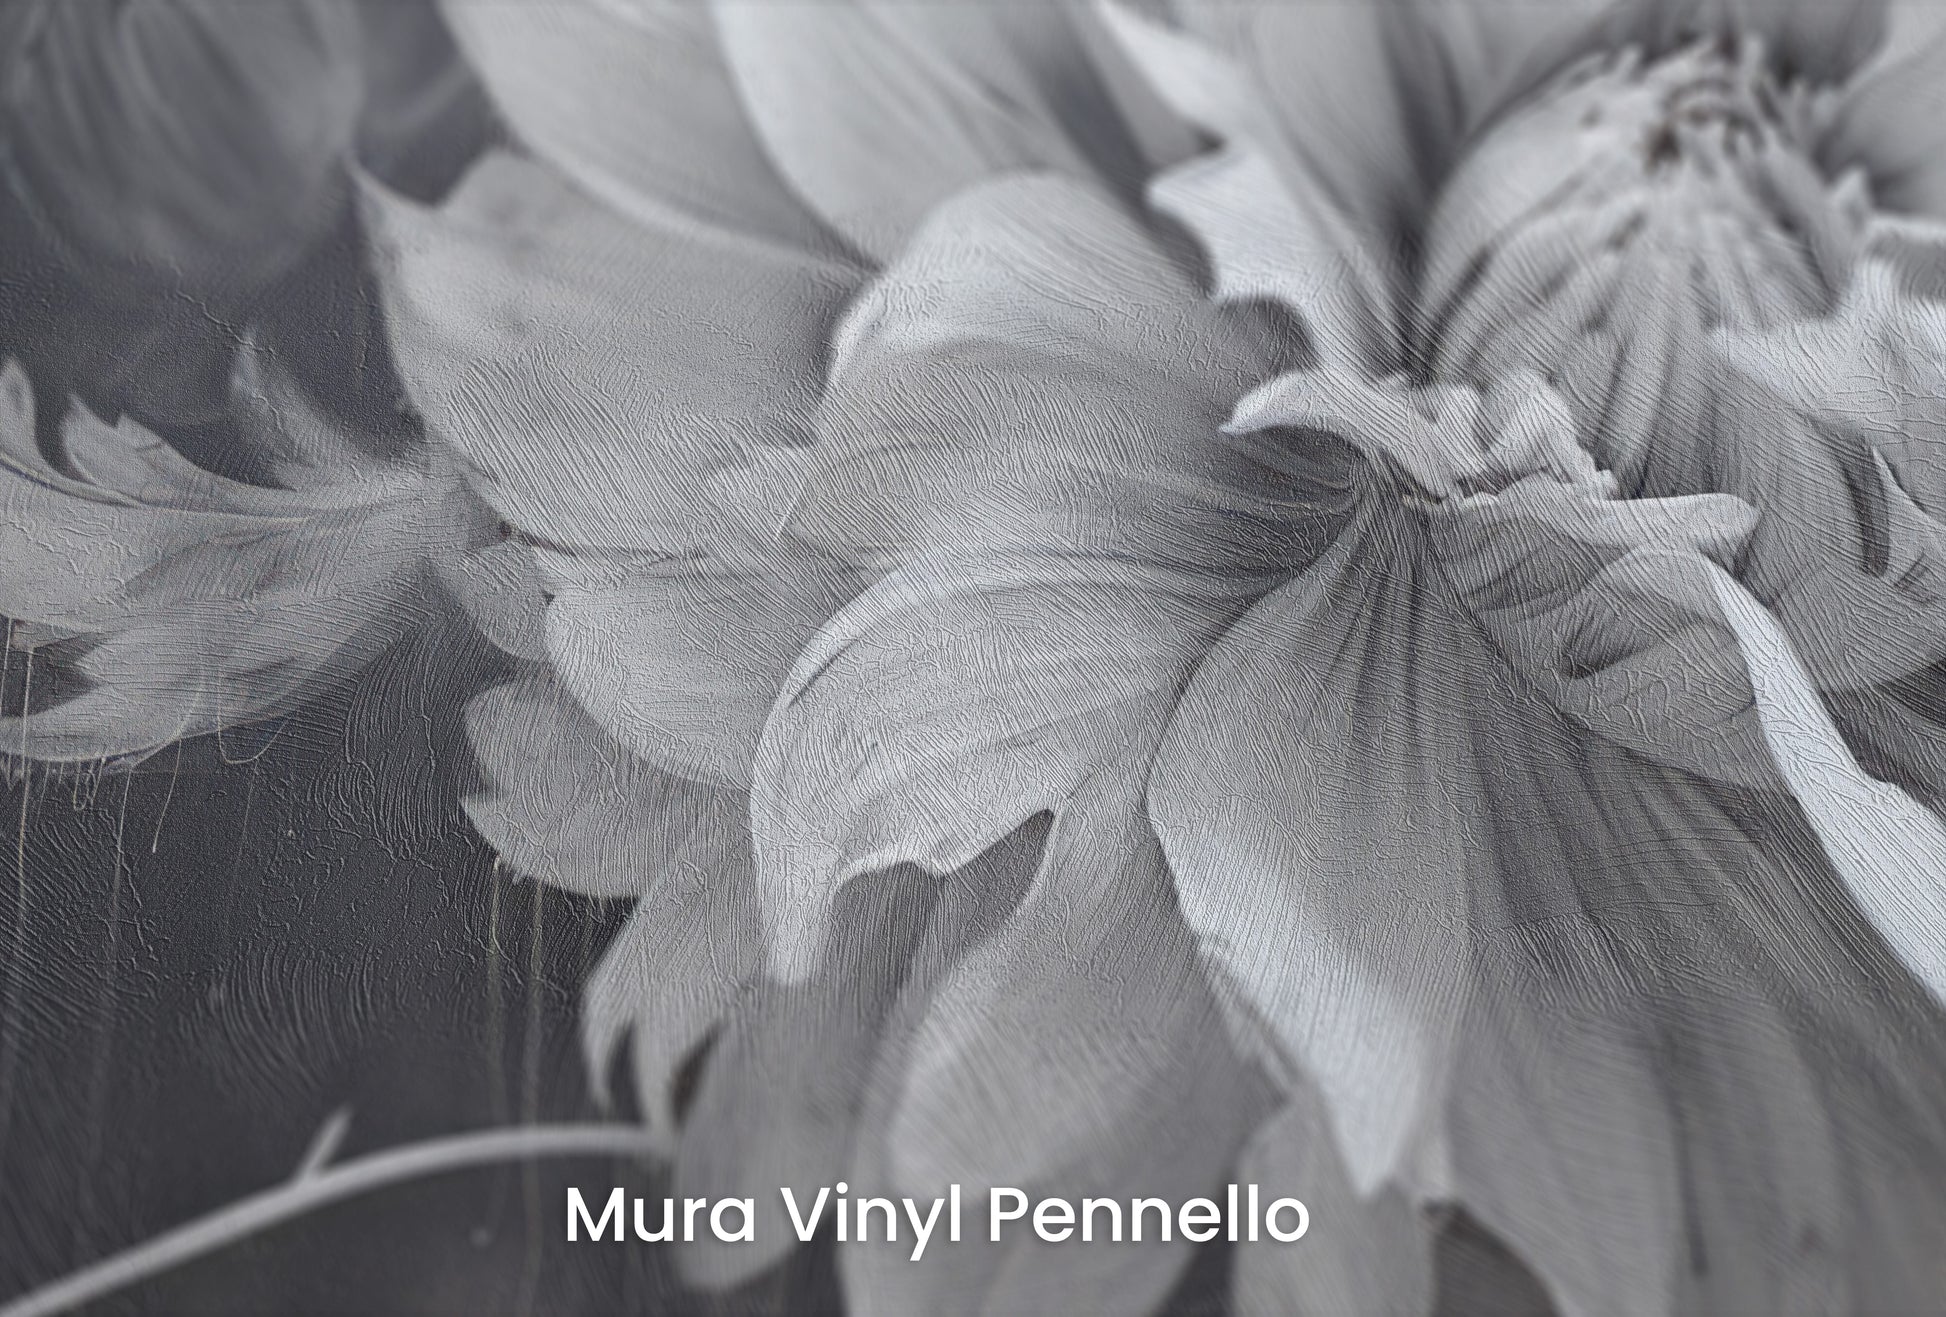 Zbliżenie na artystyczną fototapetę o nazwie TWILIGHT FLORAL FANTASY na podłożu Mura Vinyl Pennello - faktura pociągnięć pędzla malarskiego.